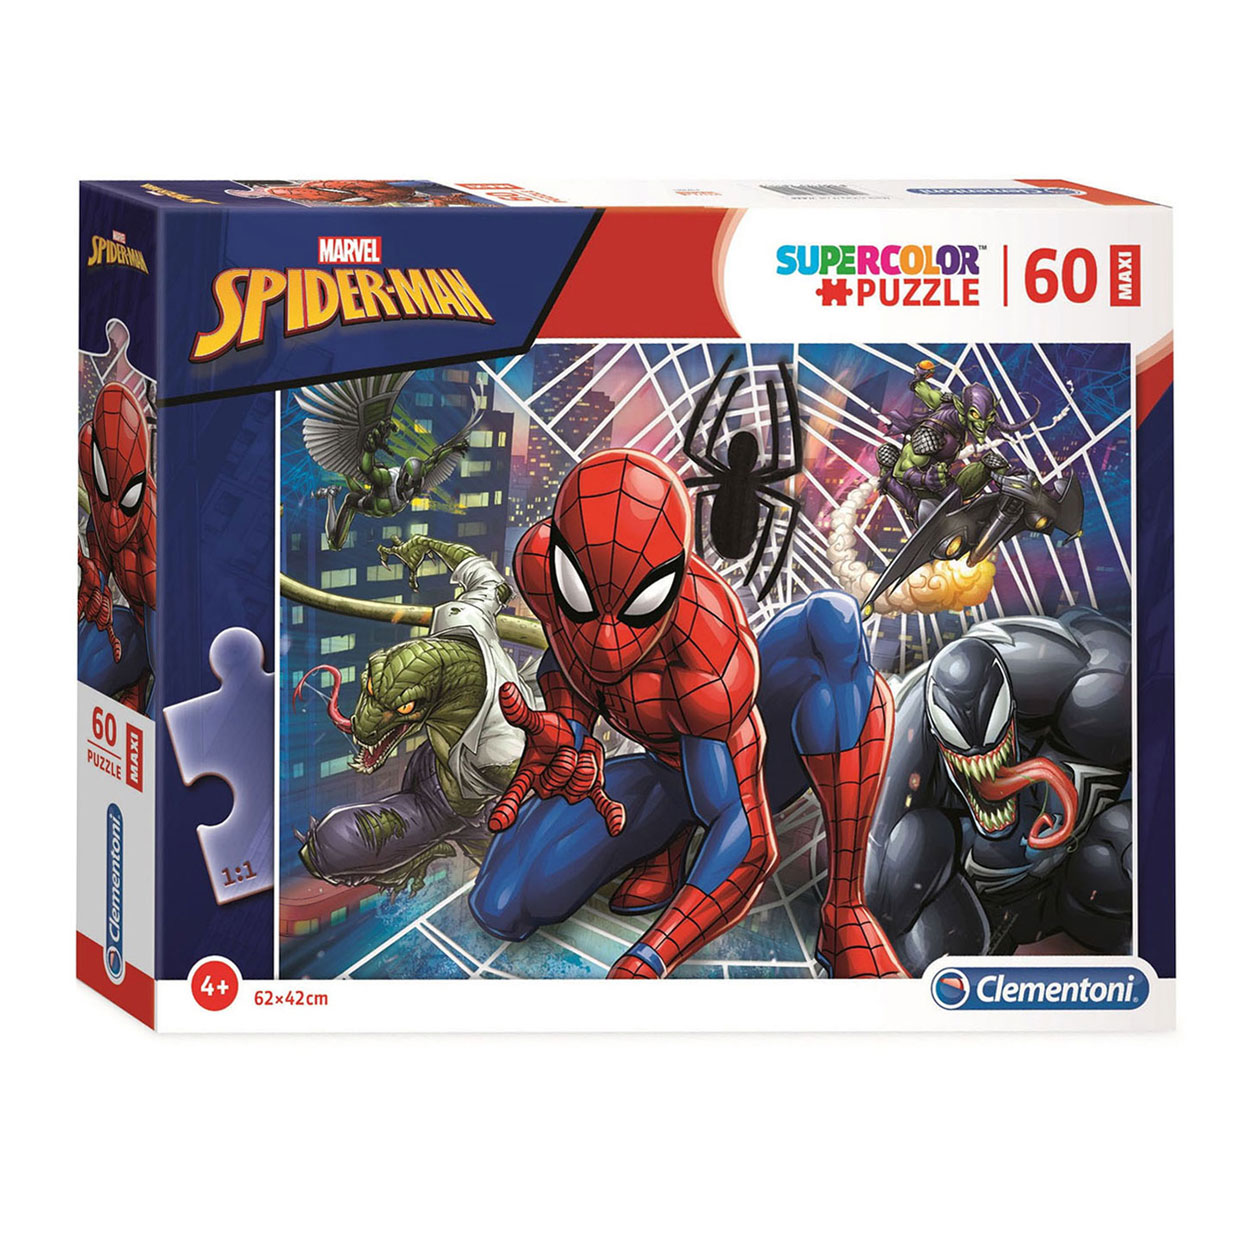 Clementoni Puzzle Super Color Maxi Spiderman, 60 Teile.